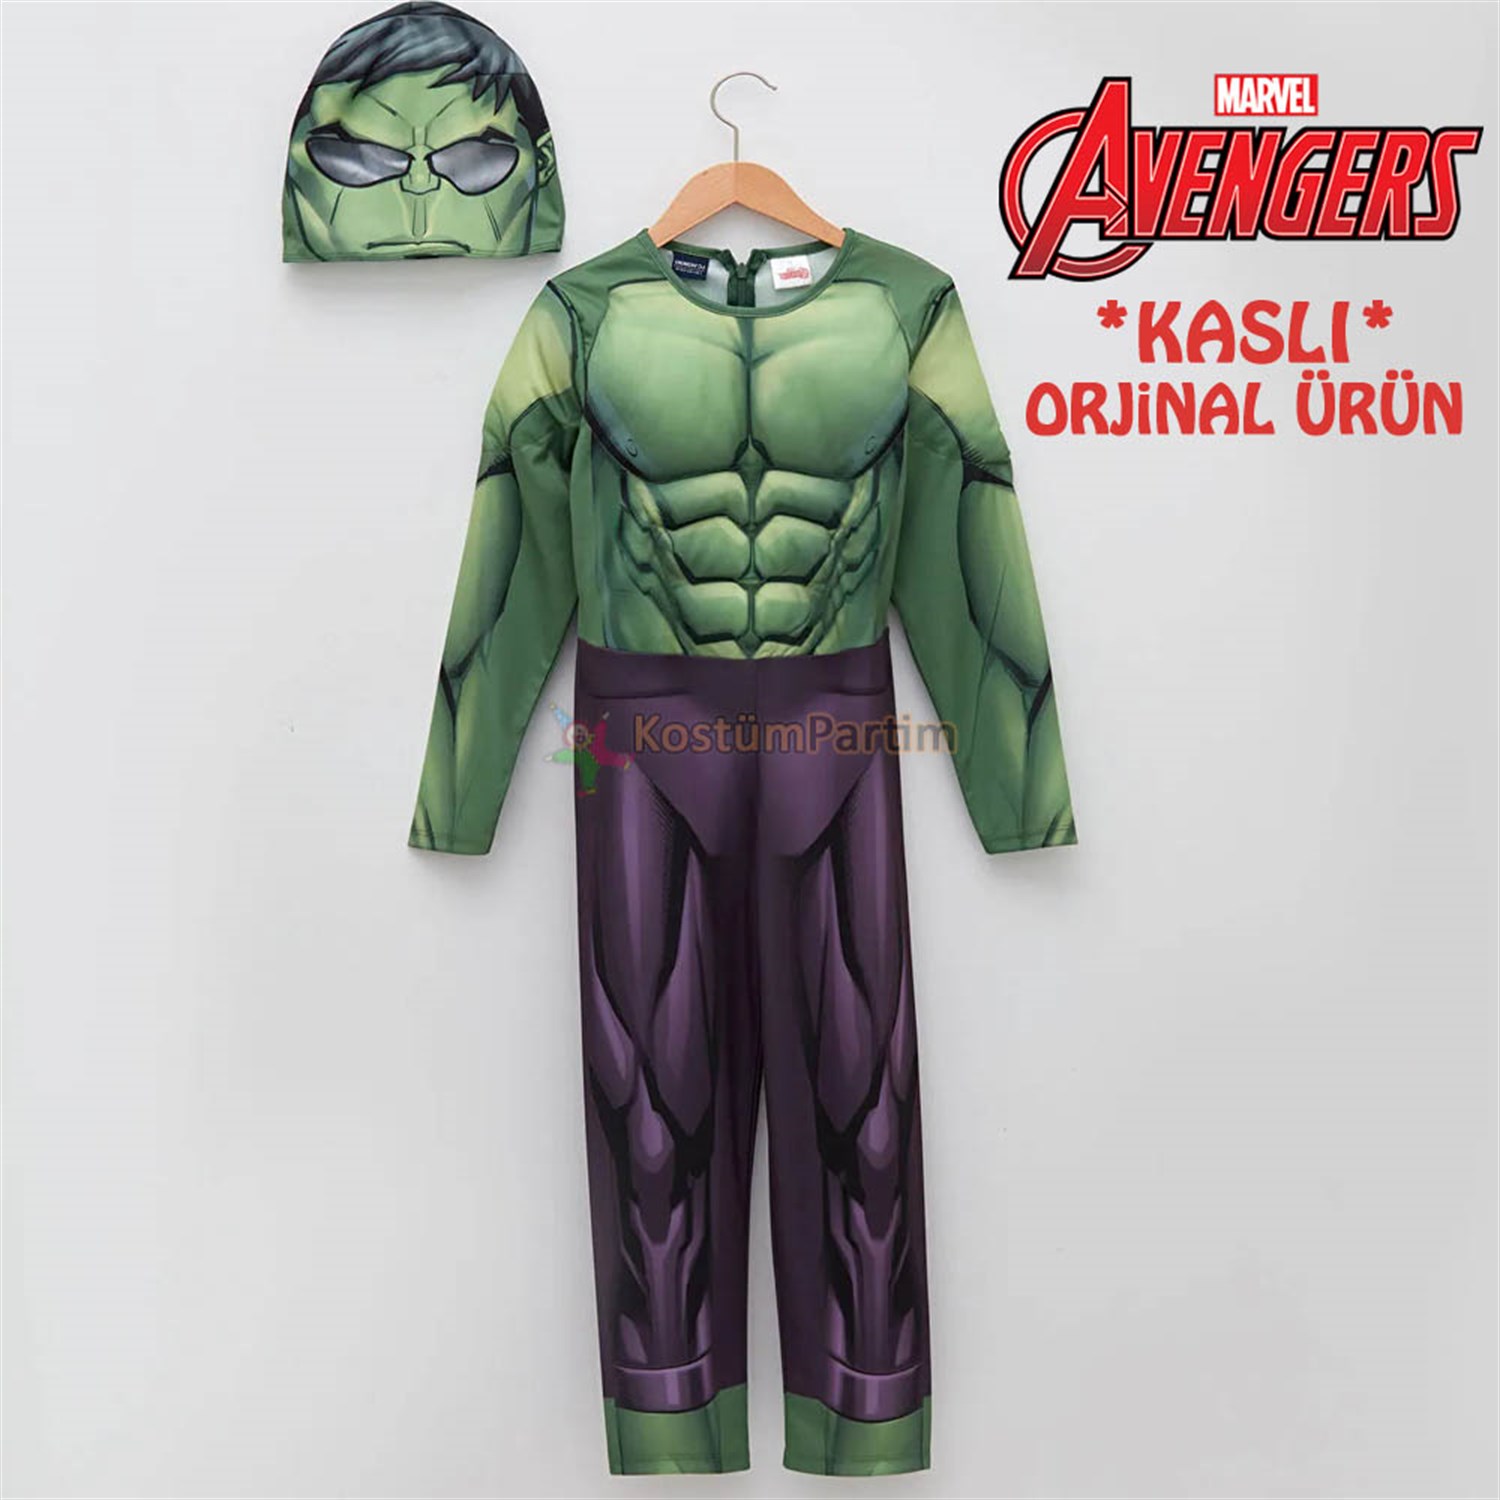 Hulk Kostümü, Kaslı Avangers Yeşil Dev Hulk Kıyafeti - KostümPartim®